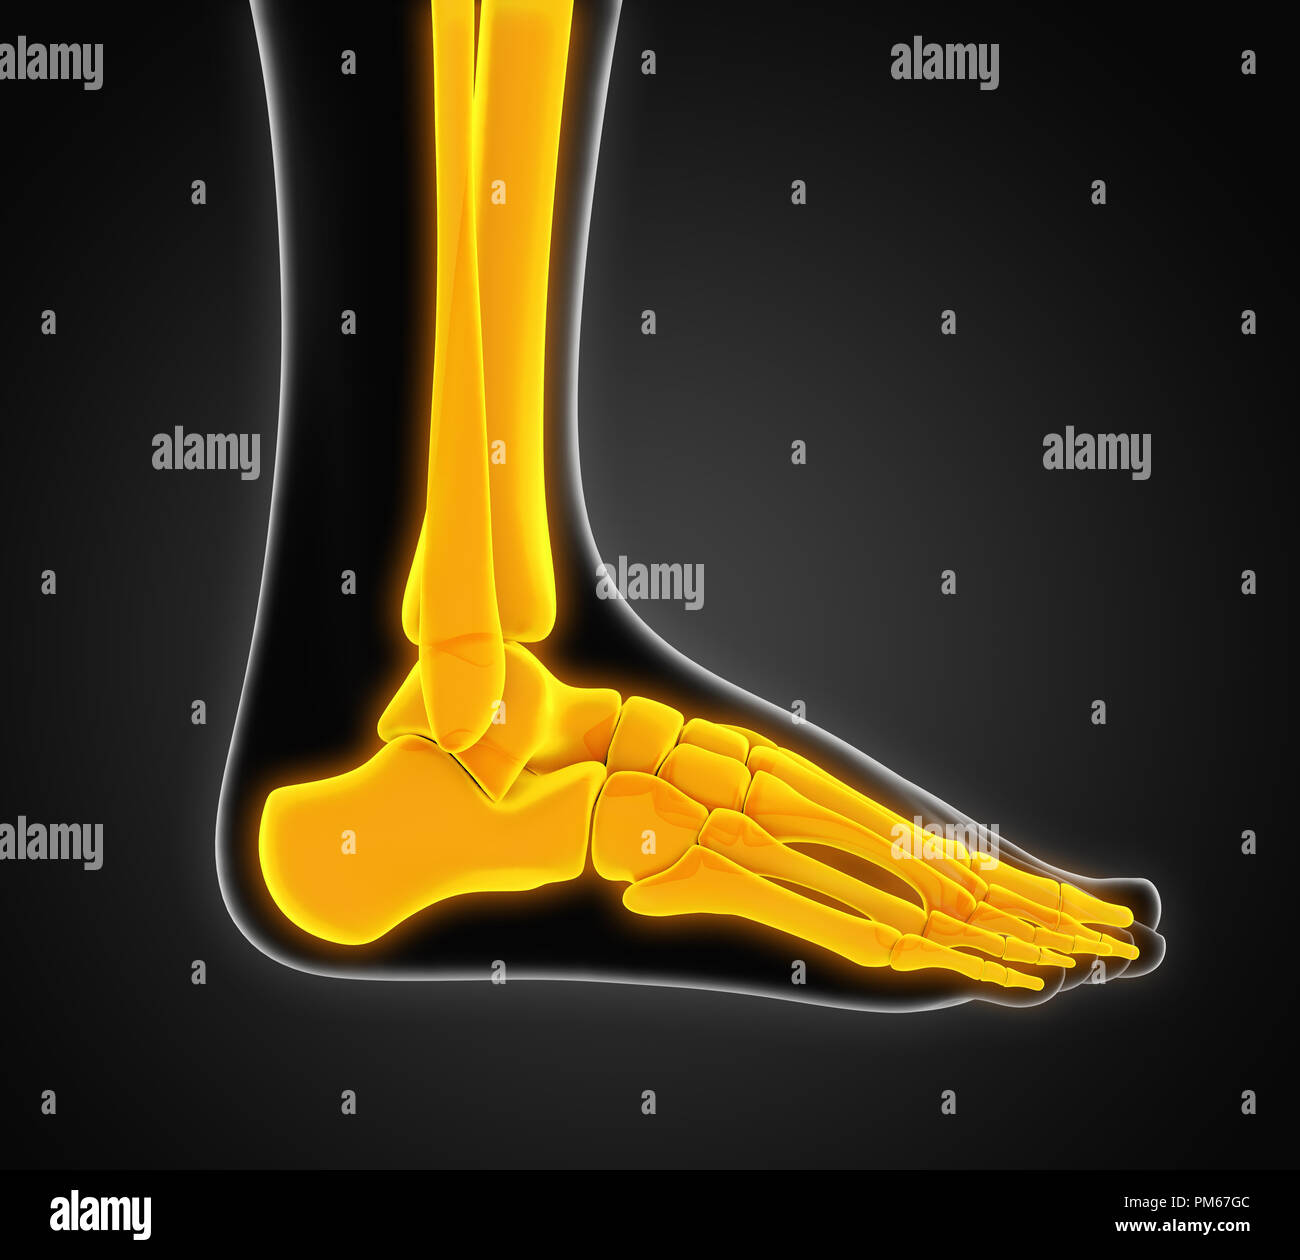 Human Foot Anatomy Illustration Stock Photo